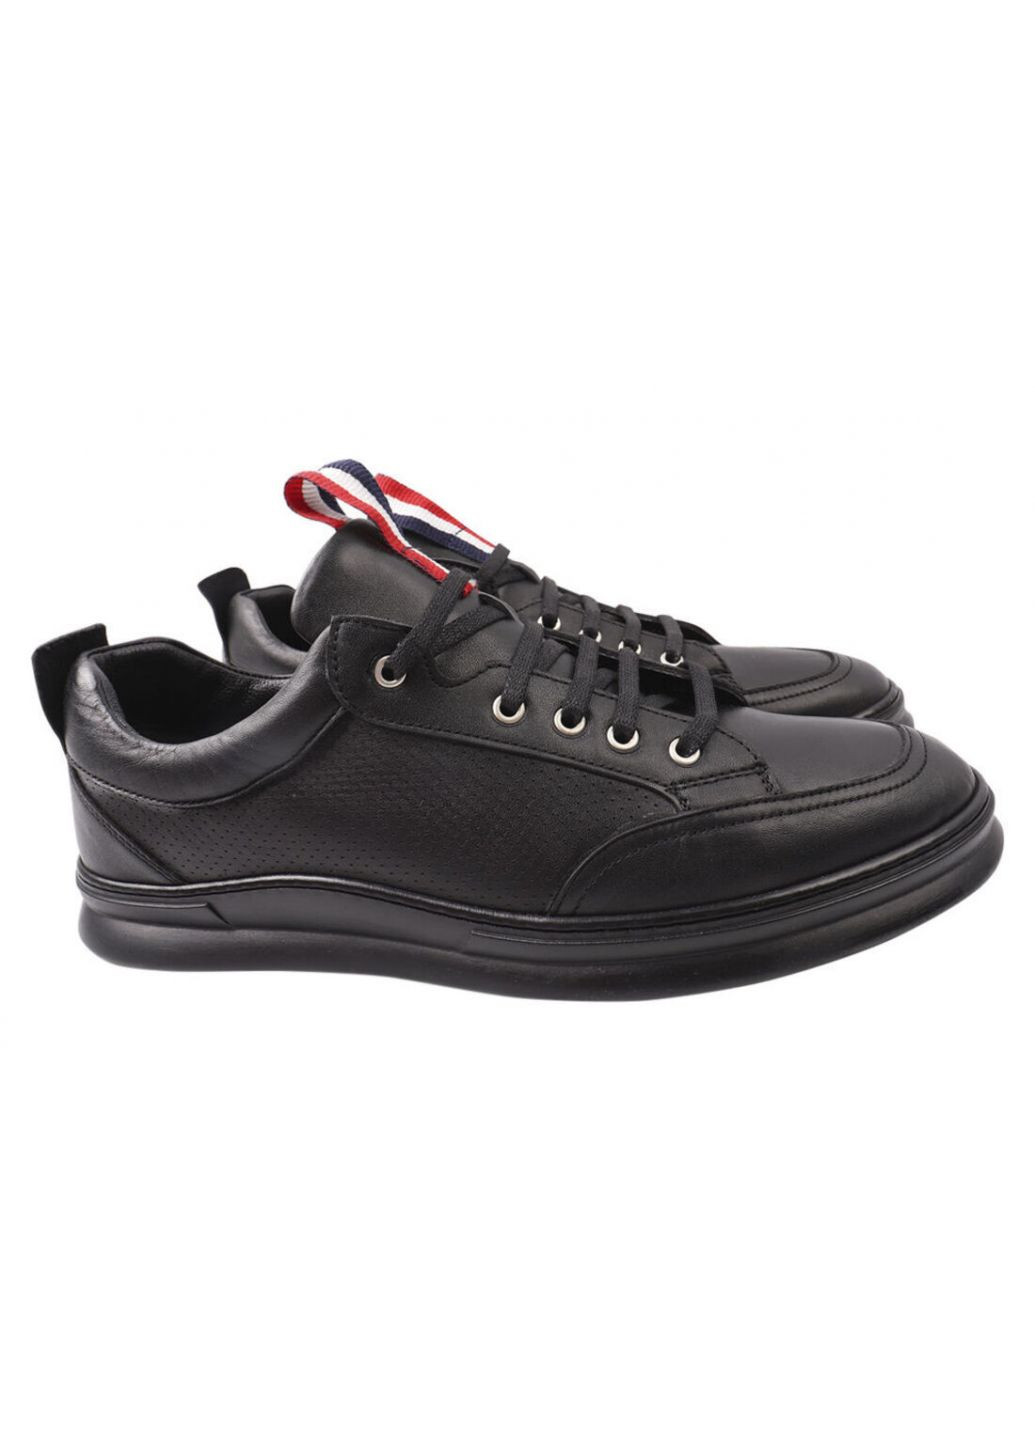 Черные кроссовки мужские из натуральной кожи, на низком ходу, на шнуровке, цвет черный, турция Ridge 427-21DTC